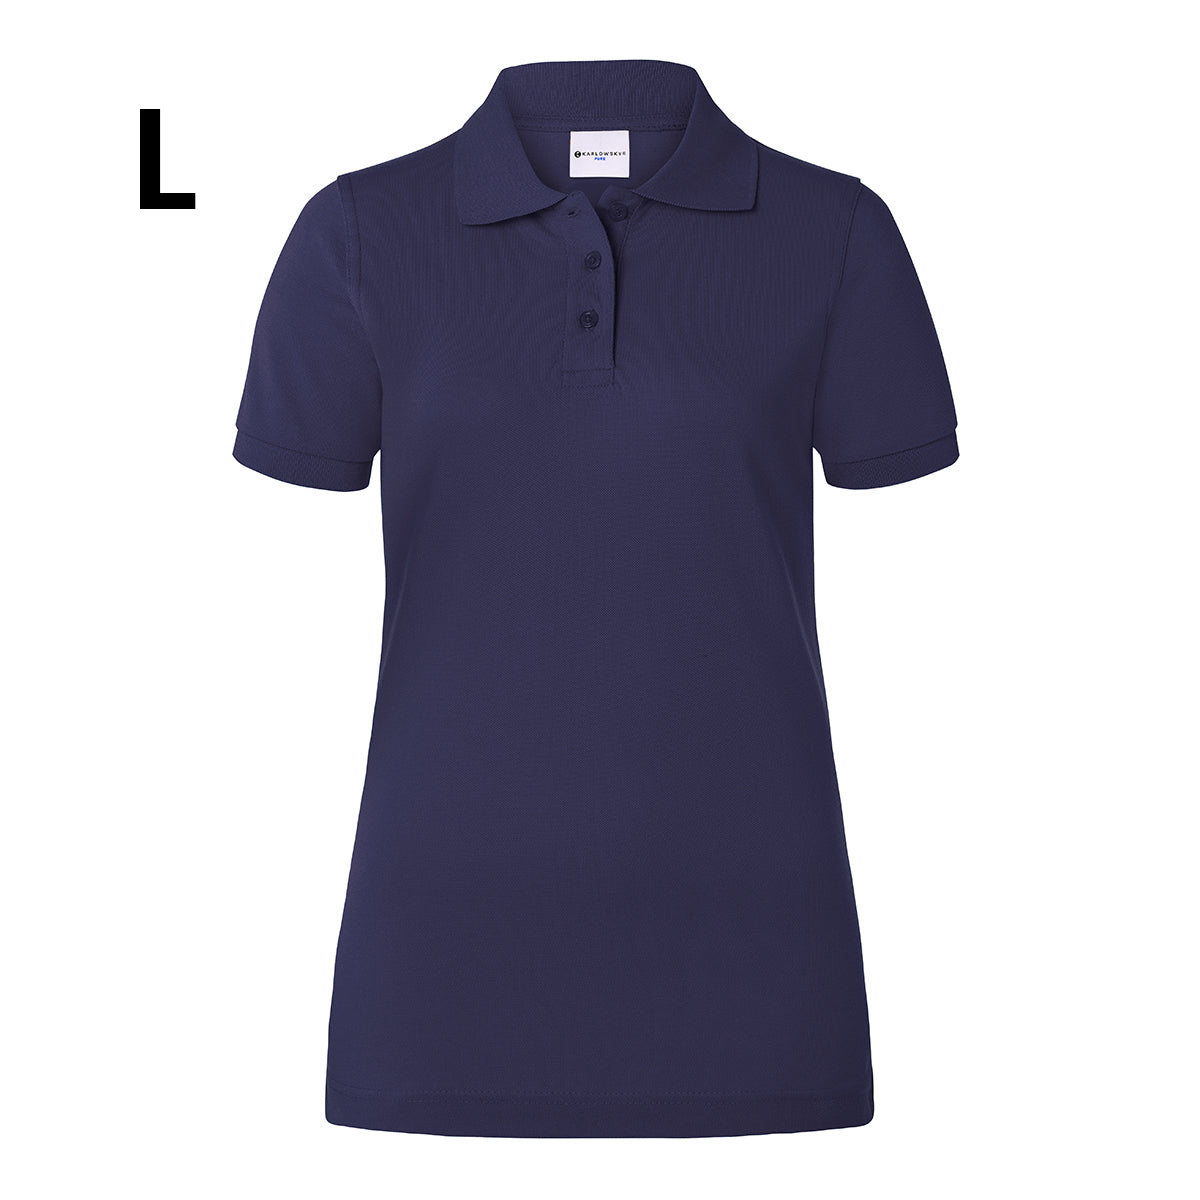 Karlowsky - Arbejdsbeklædning Basic Poloshirt til damer - Navy - Størrelse: L